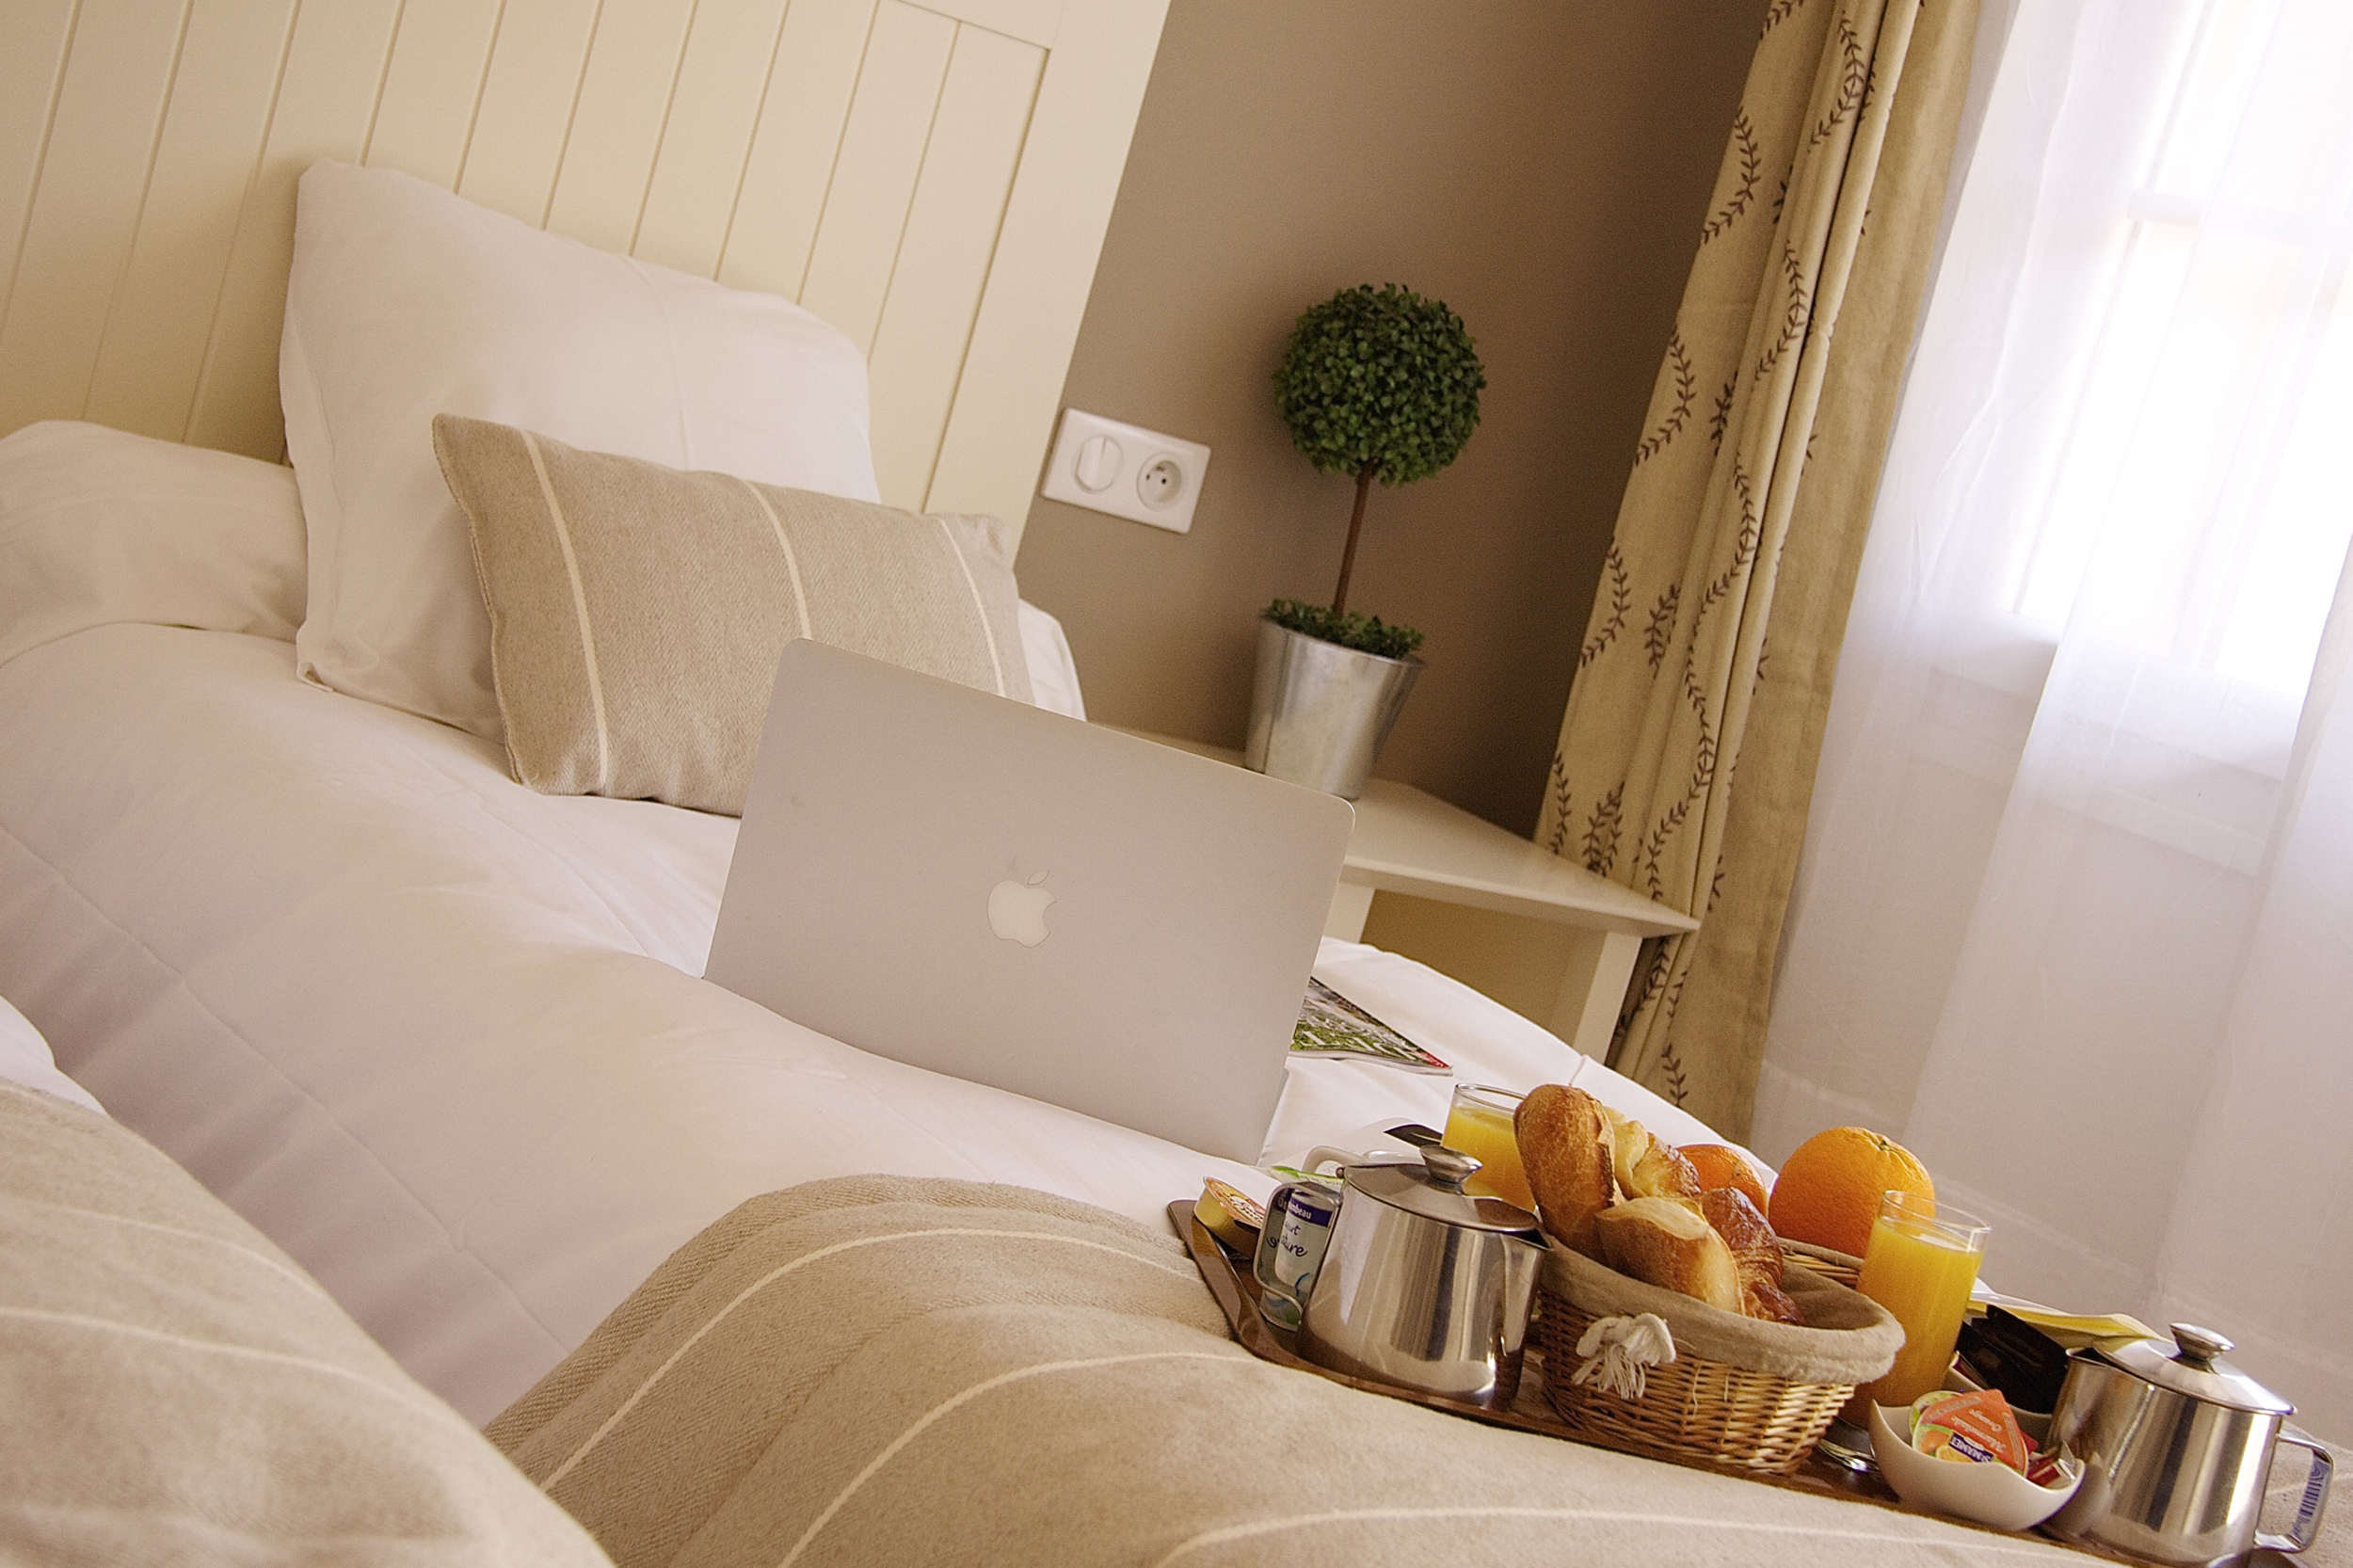 Comfort hotel room in Aix en Provence